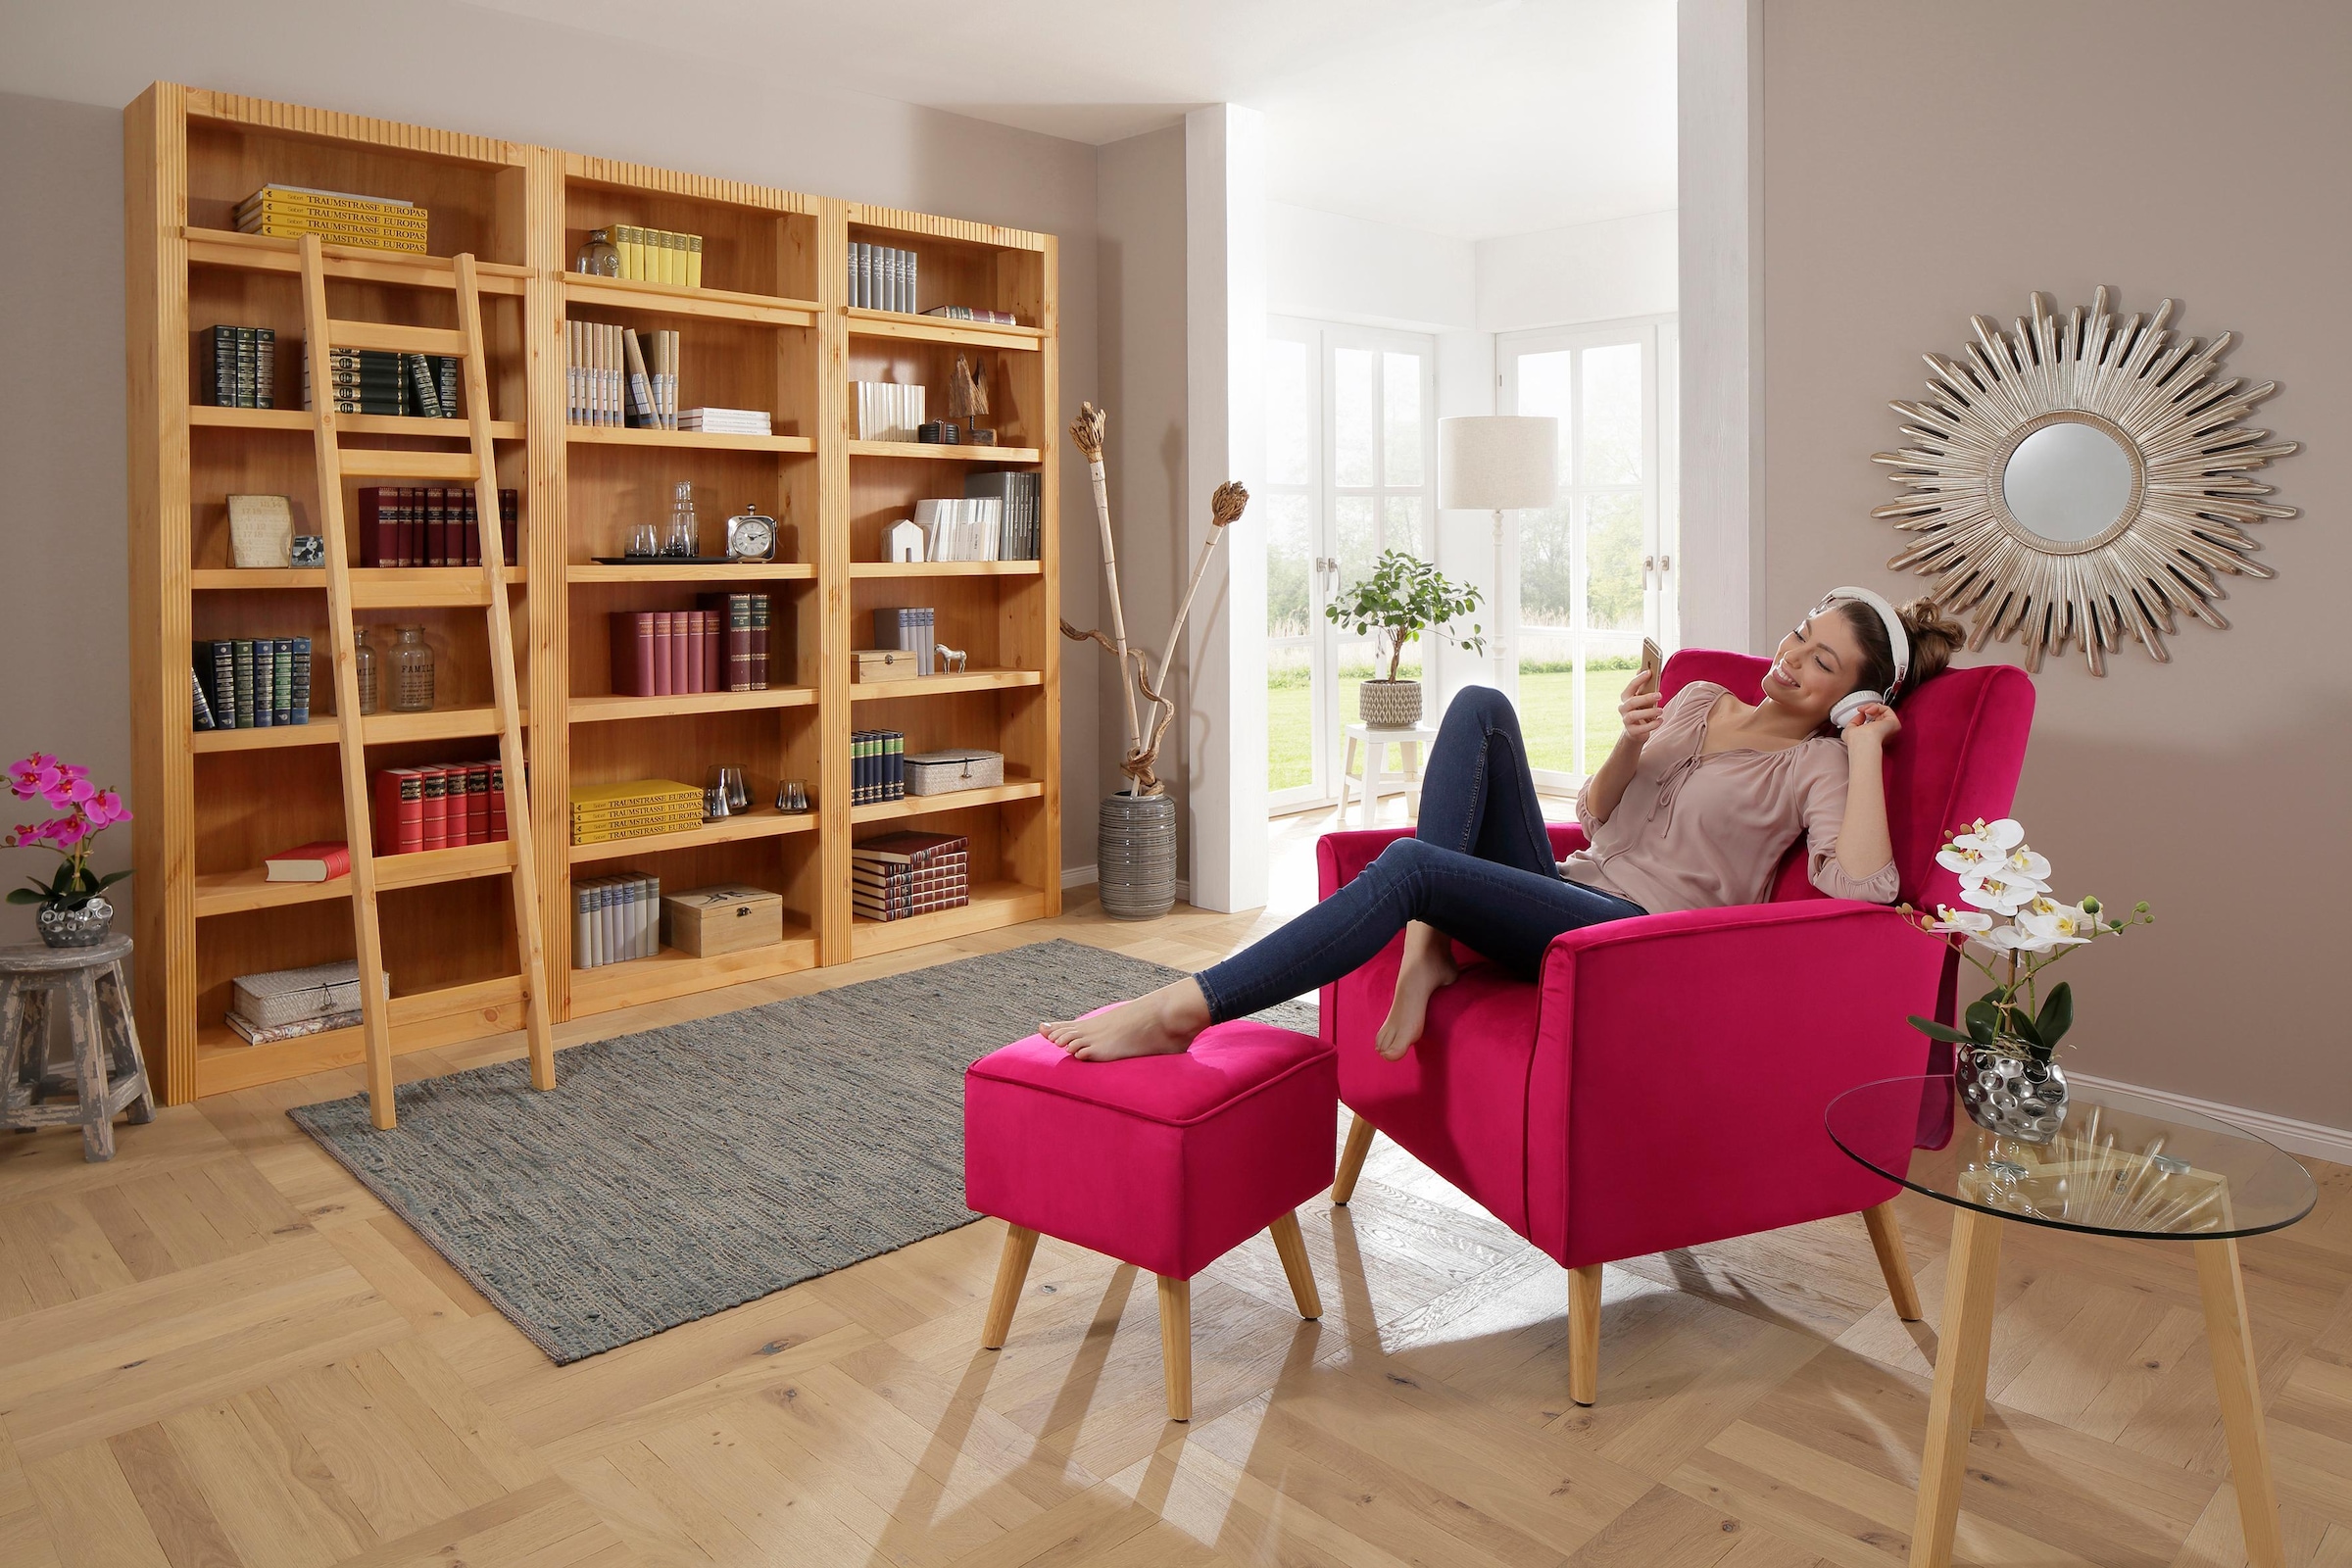 Home affaire Bücherwand »Bergen«, aus schönem massivem Kiefernholz, 3 tlg.  online kaufen